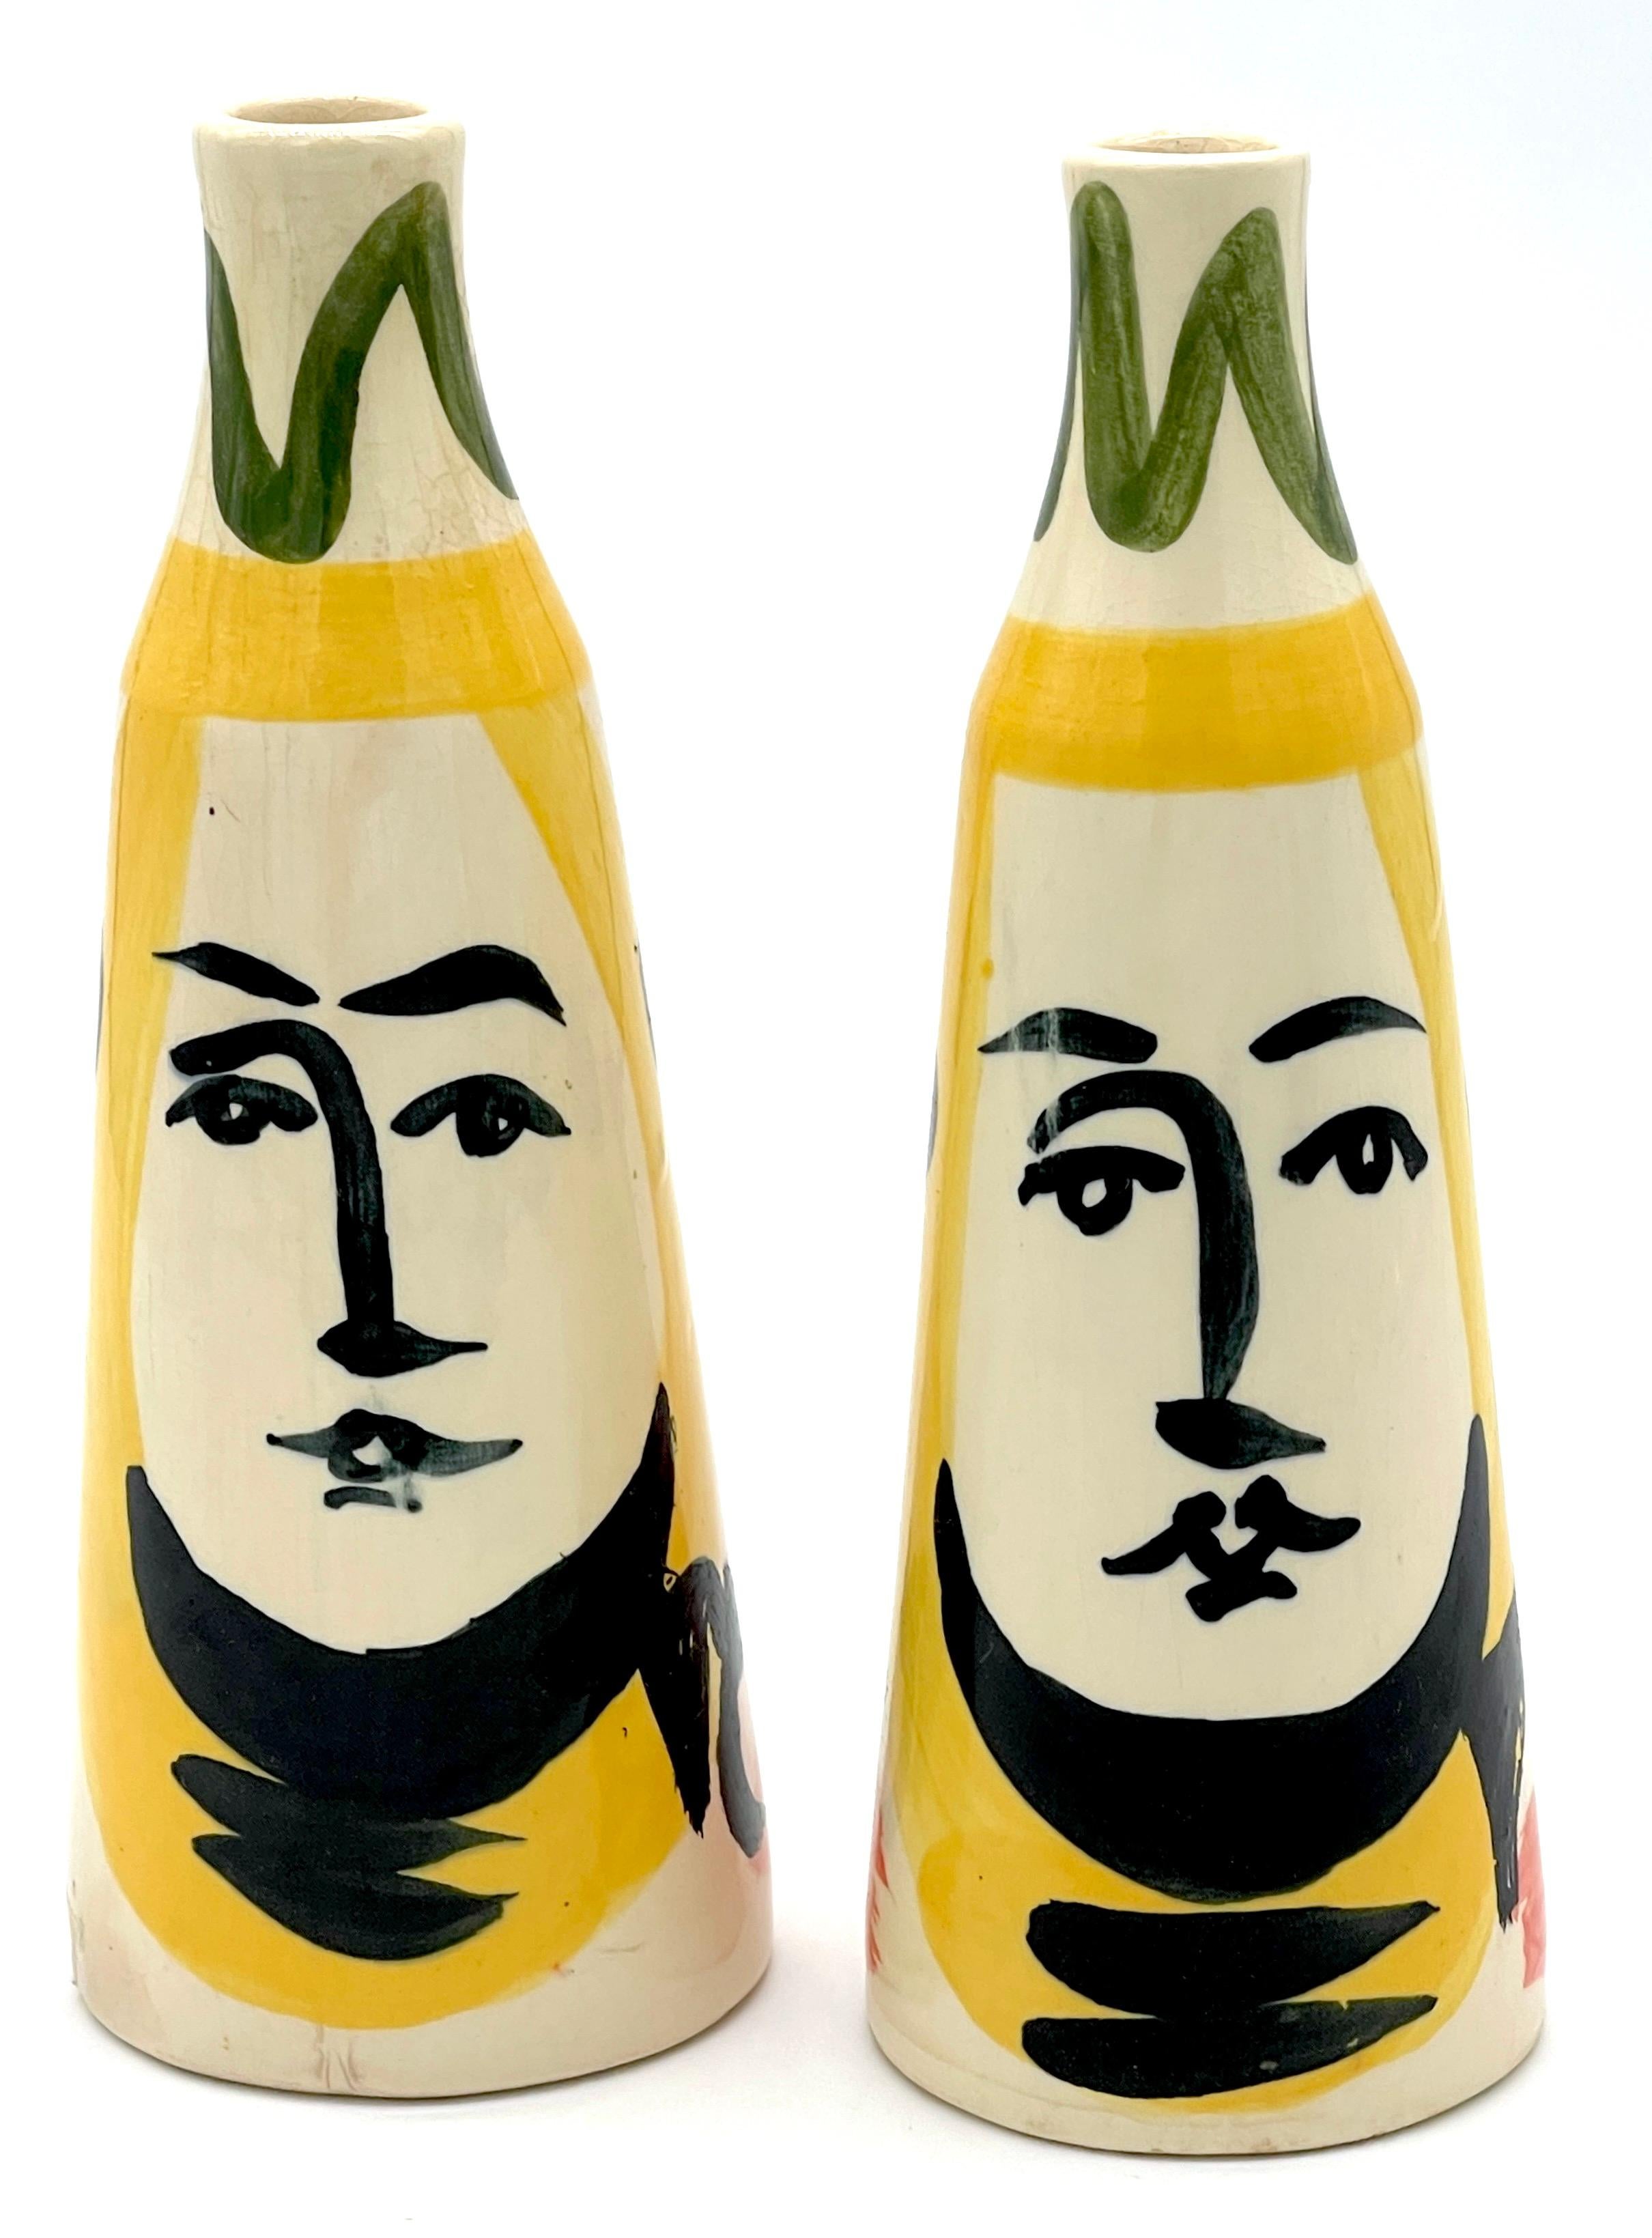 Paar gestempelte Padilla Picasso-Keramik-Vasen mit konischem Gesicht
Nach Pablo Picasso
Jedes Exemplar mit dem Stempel 'Femo 1944 Edition Picasso Padilla  hv Mexiko '

Ein feines Paar gestempelter Padilla Picasso Keramikvasen mit konischem Gesicht,